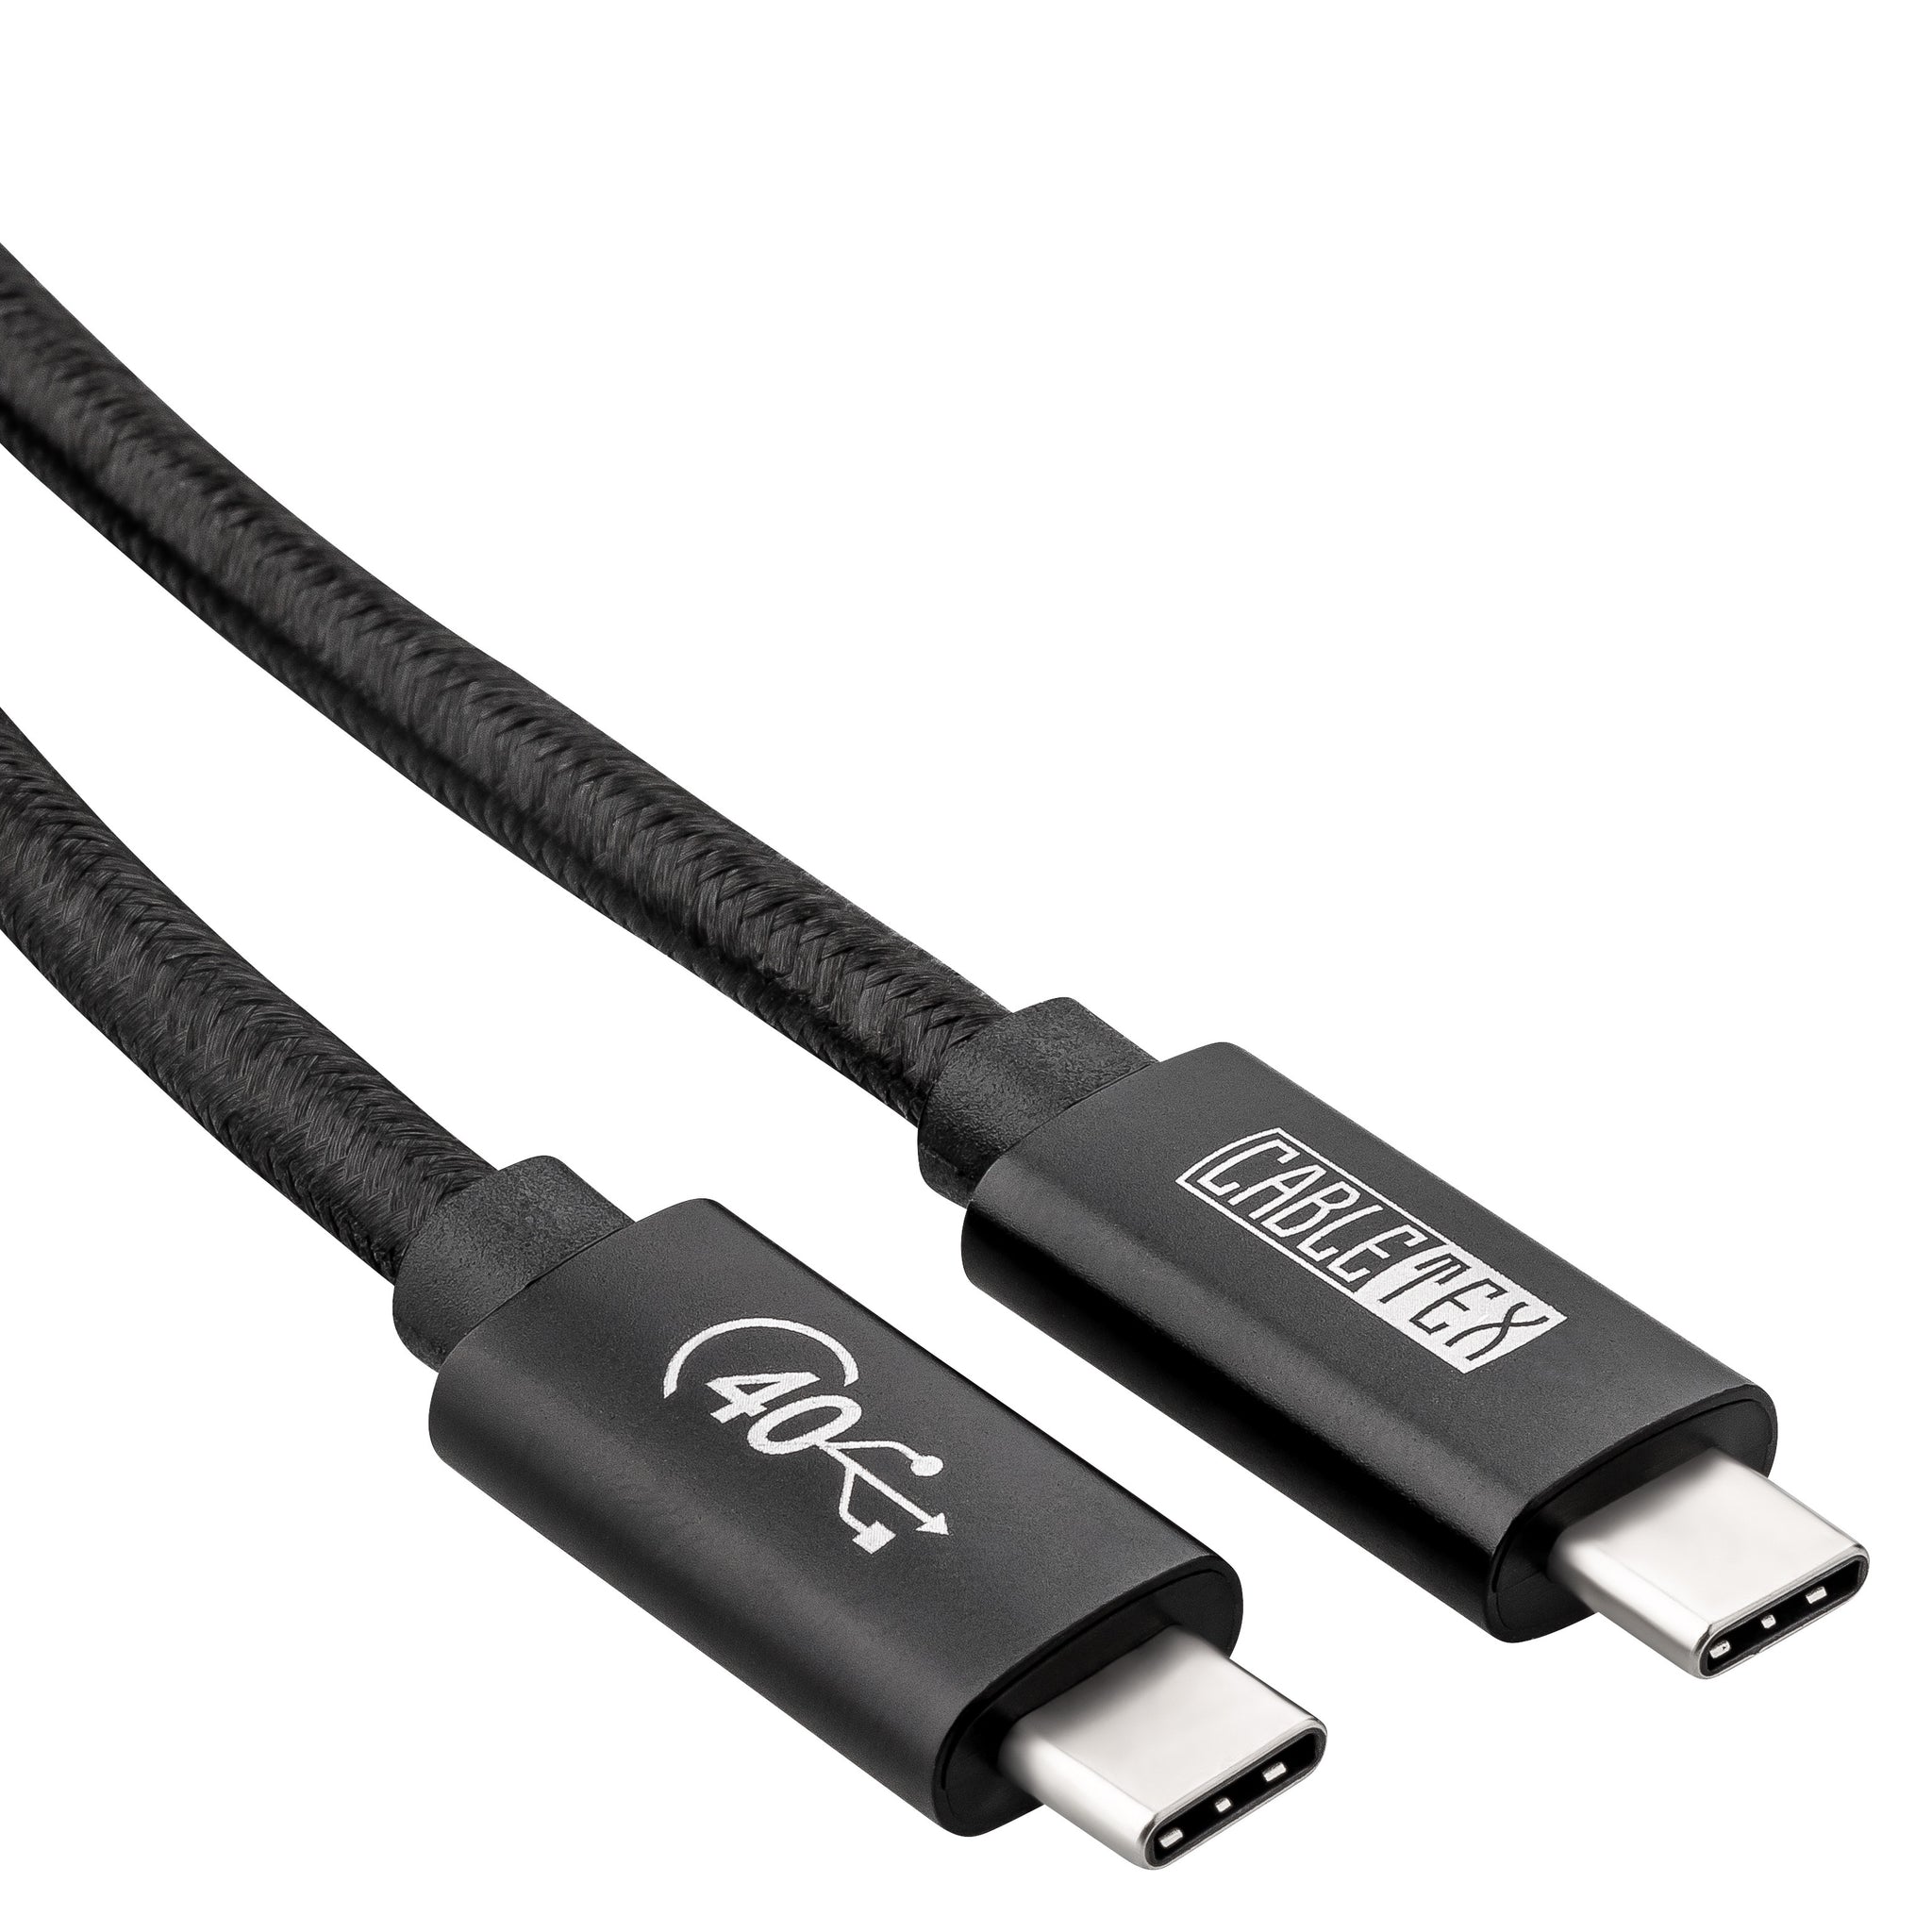 USB4 Gen3x2 Monitorkabel, USB-C zu USB-C